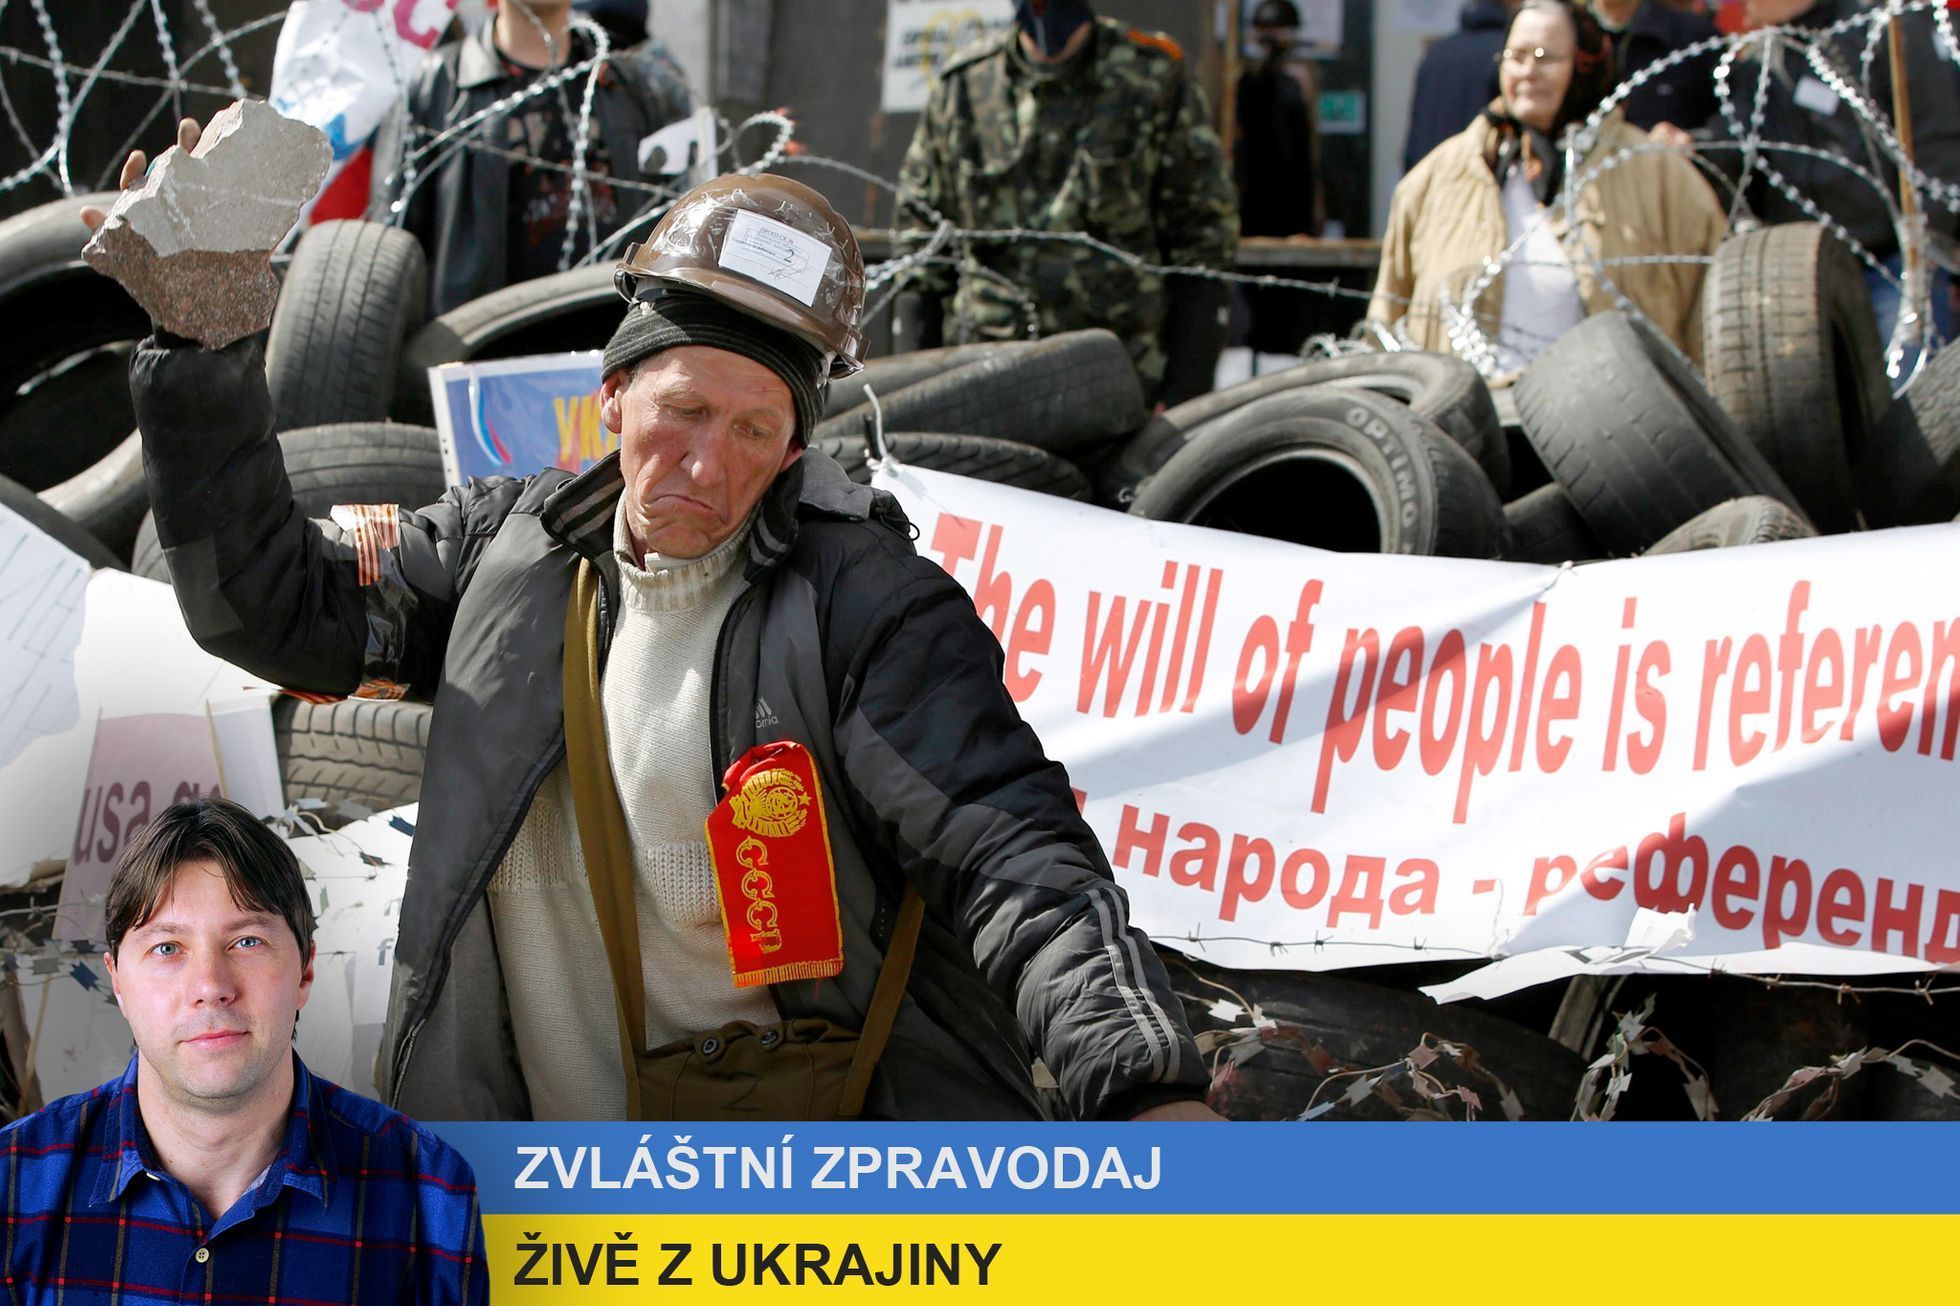 Zvláštní zpravodaj živě z Ukrajiny